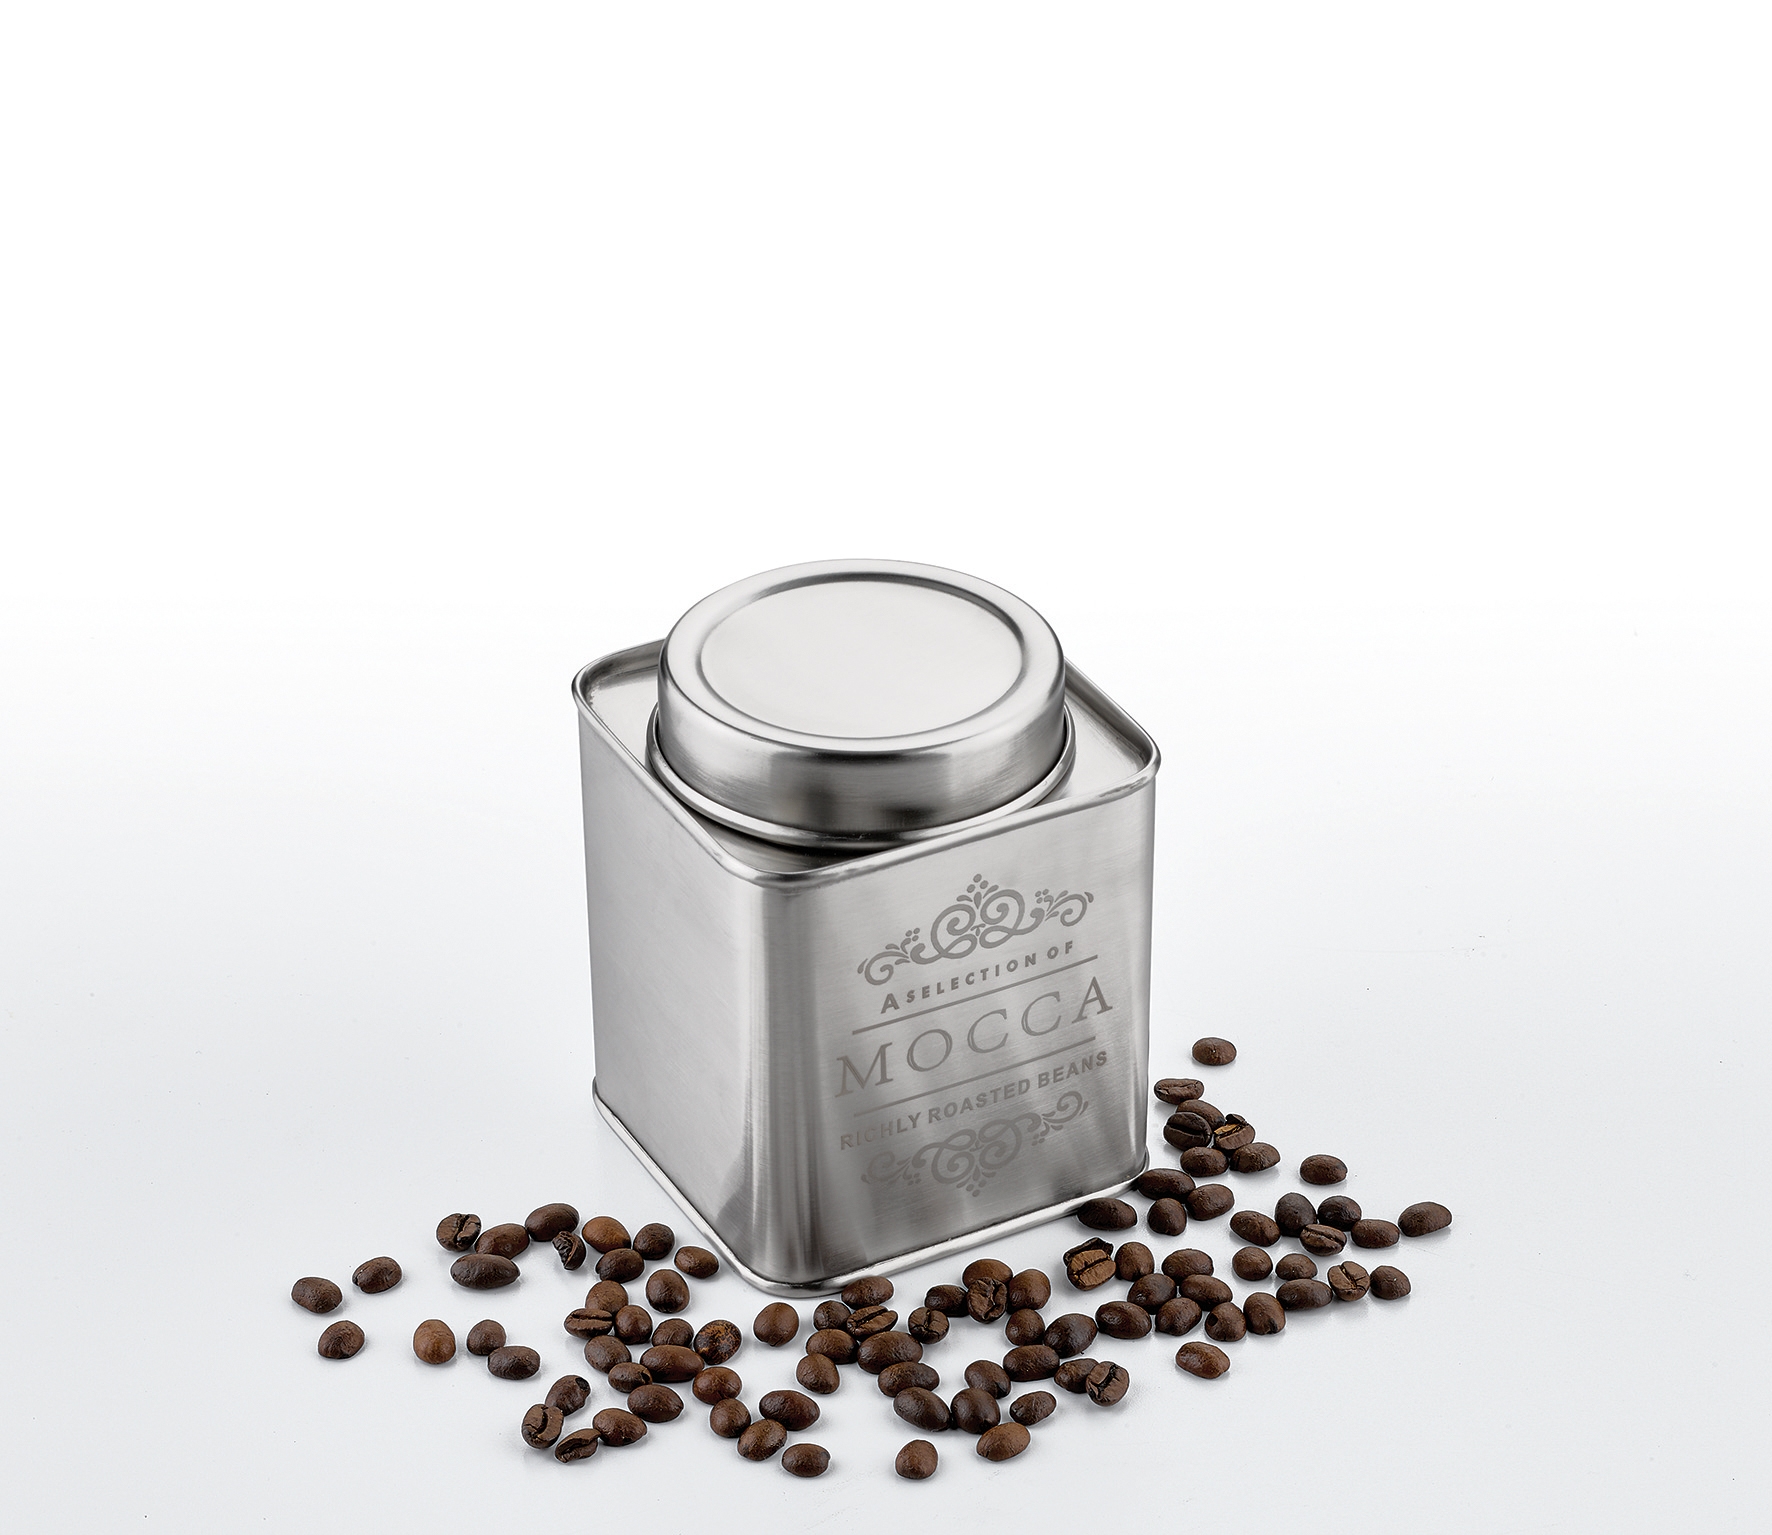 Vorratsdose MOCCA / COFFEE 0,323kg hochwertiger Edelstahl  + luftdicht verschließbar  